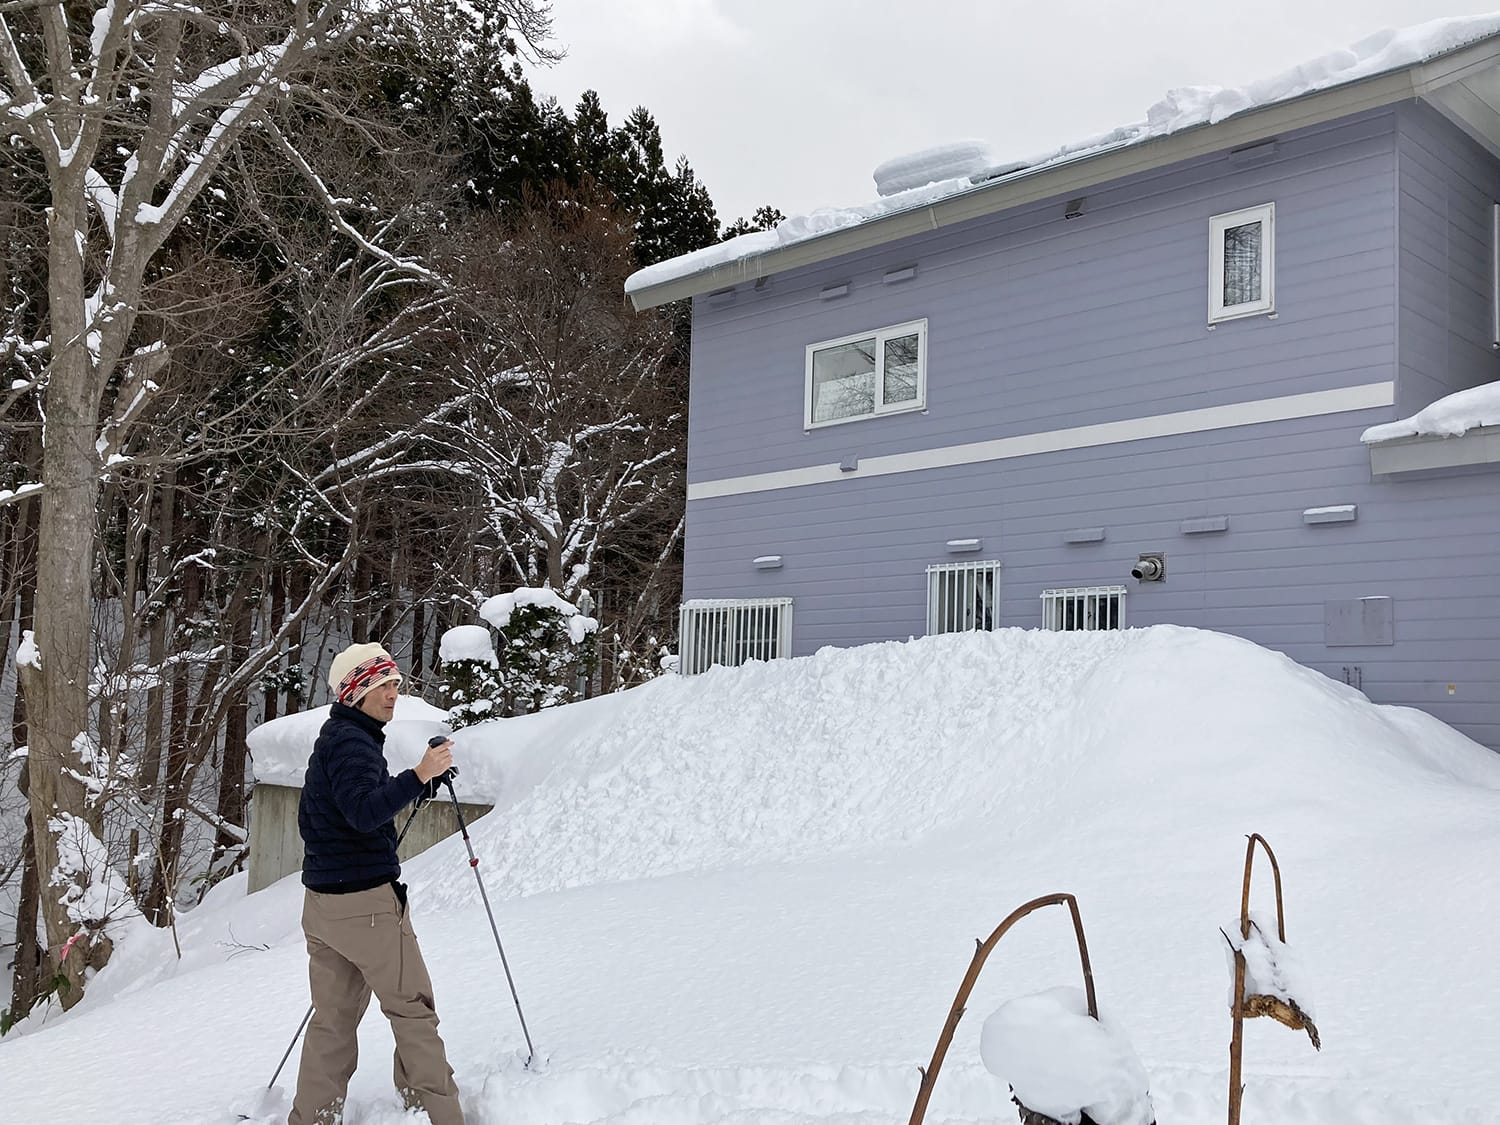 隣の家の2階屋根からの落雪の流れ込み状況